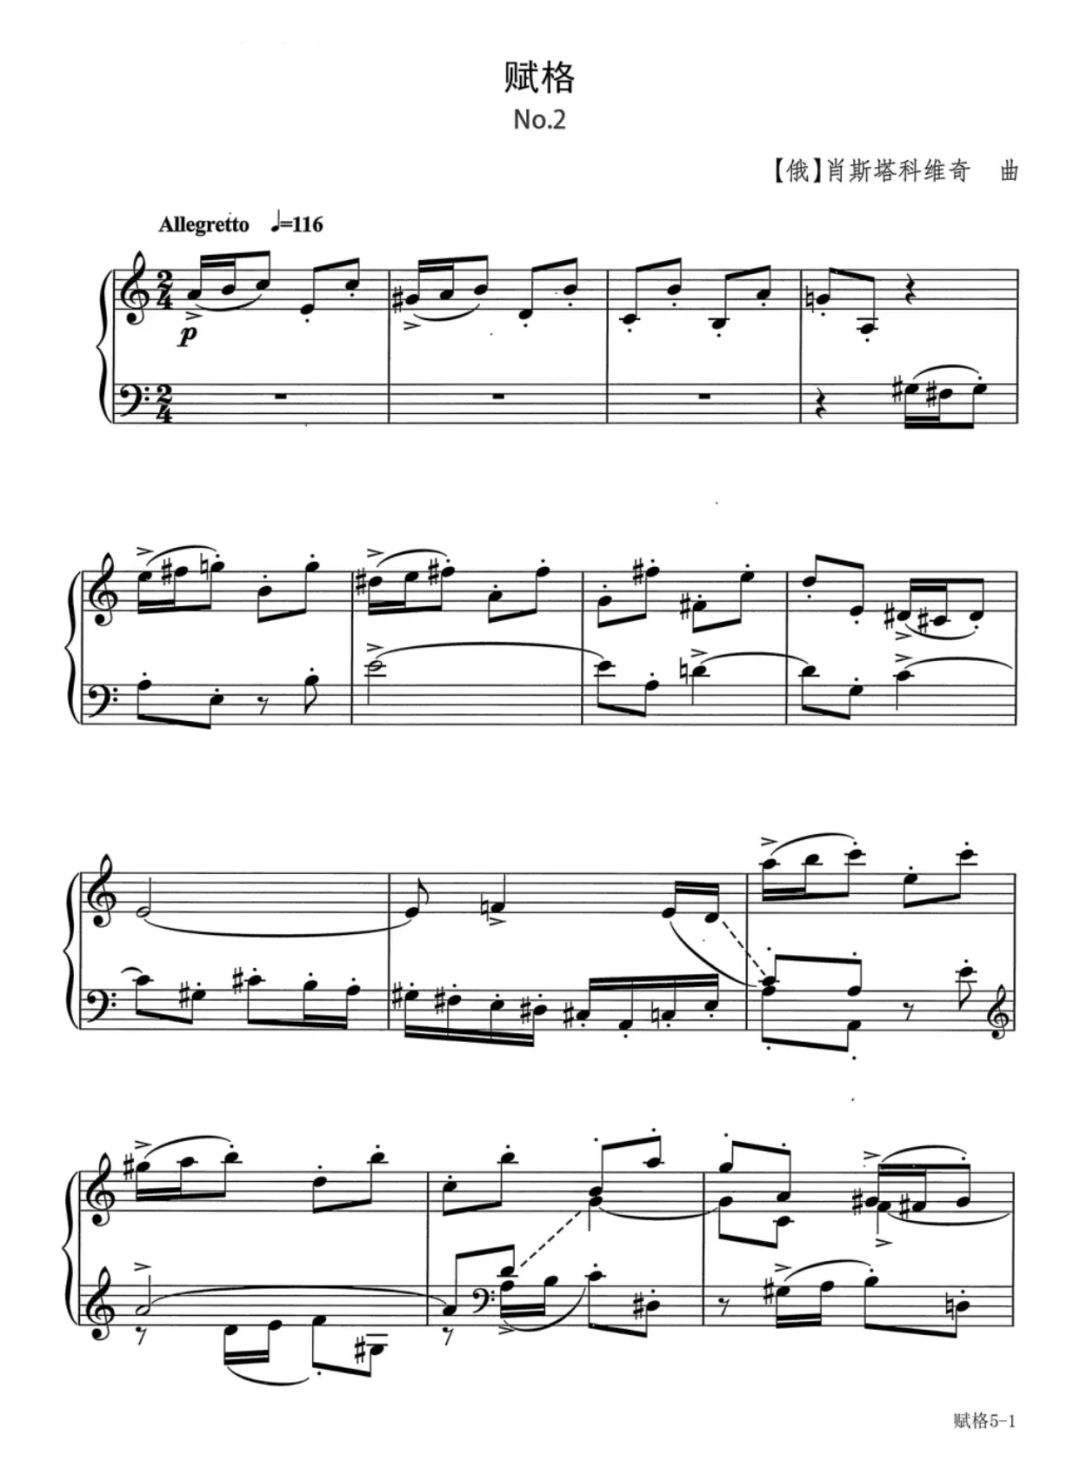 10级钢琴考级曲g小调赋格(中国音乐学院钢琴考级九级g小调赋格)